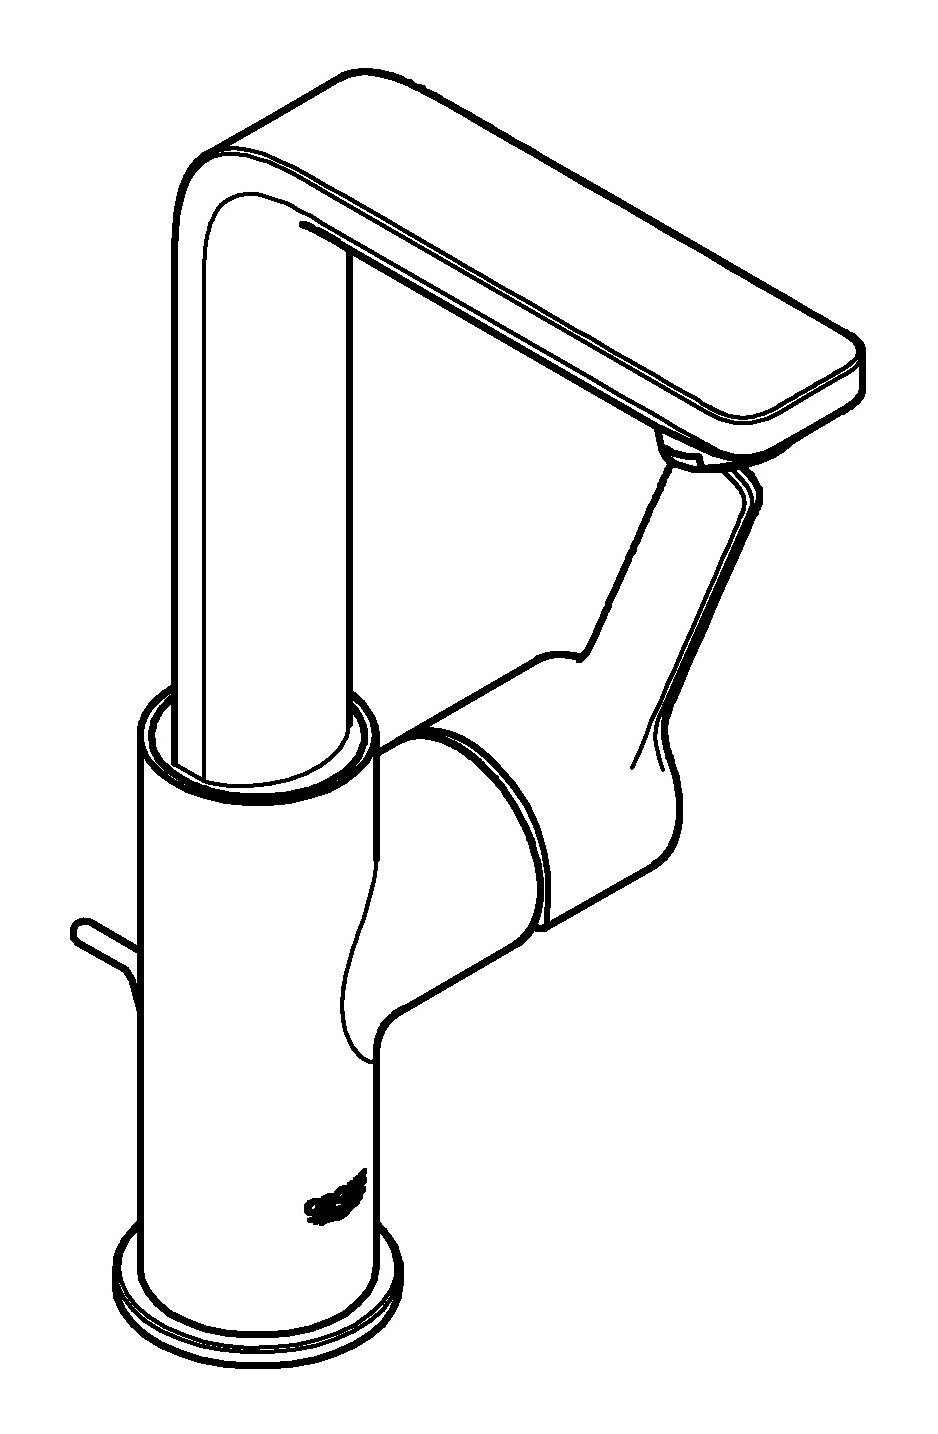 Zugstangen-Ablaufgarnitur L-Size - Supersteel Einhand mit Lineare Grohe Waschtischarmatur